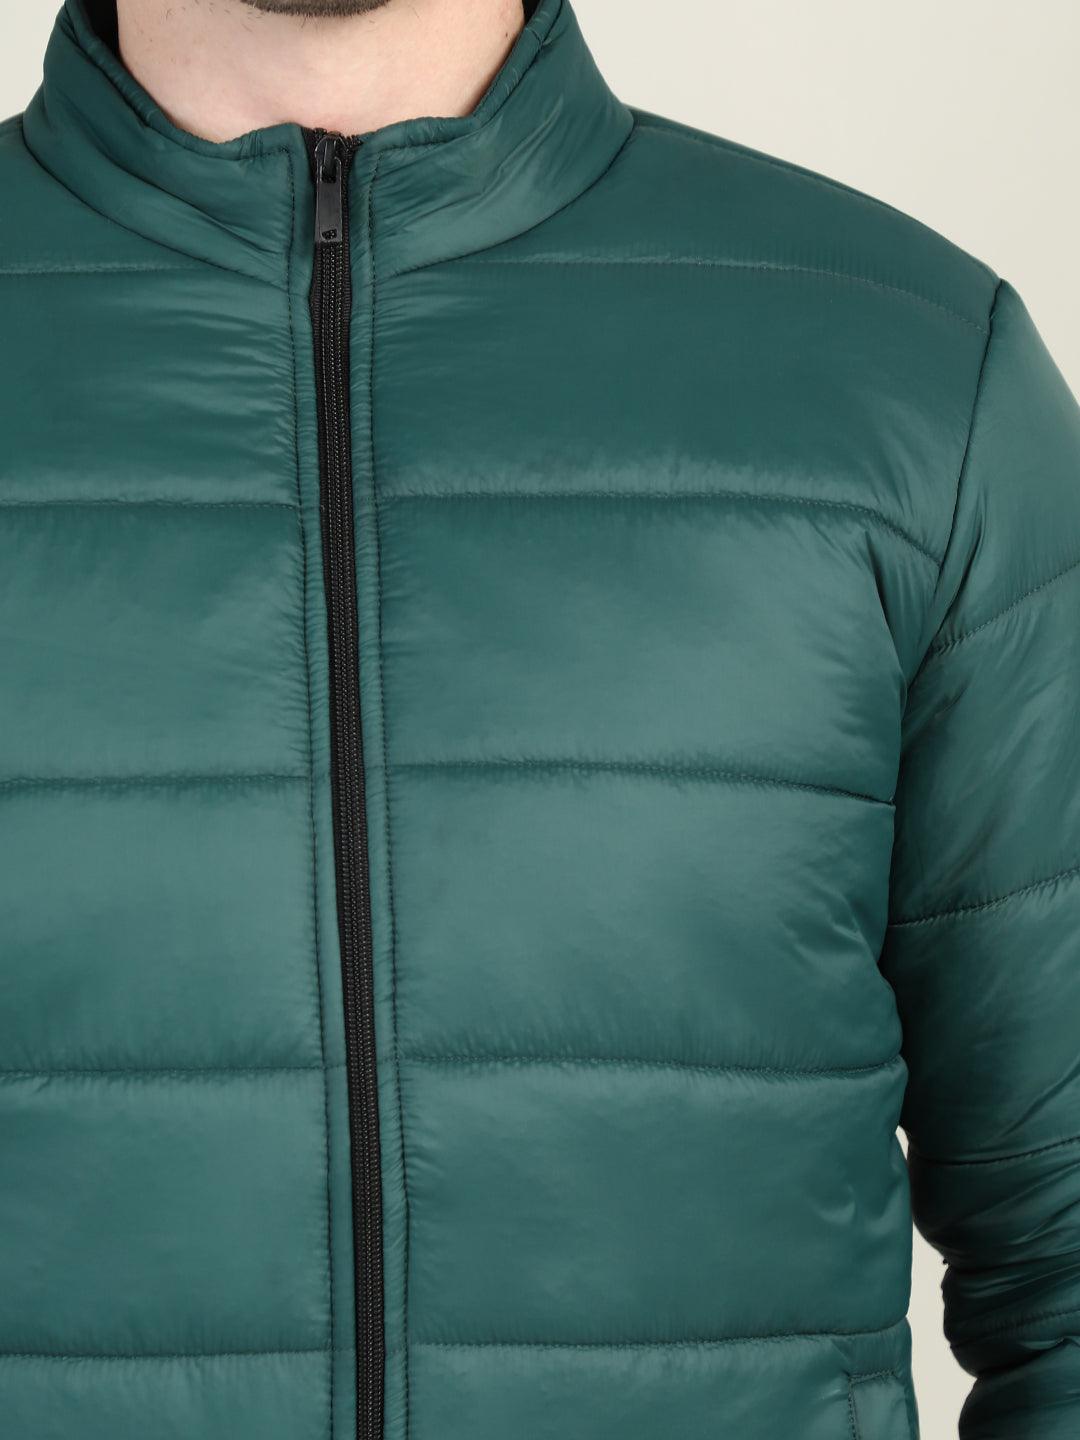 Men's winter wear Jackets | CHKOKKO - Chkokko